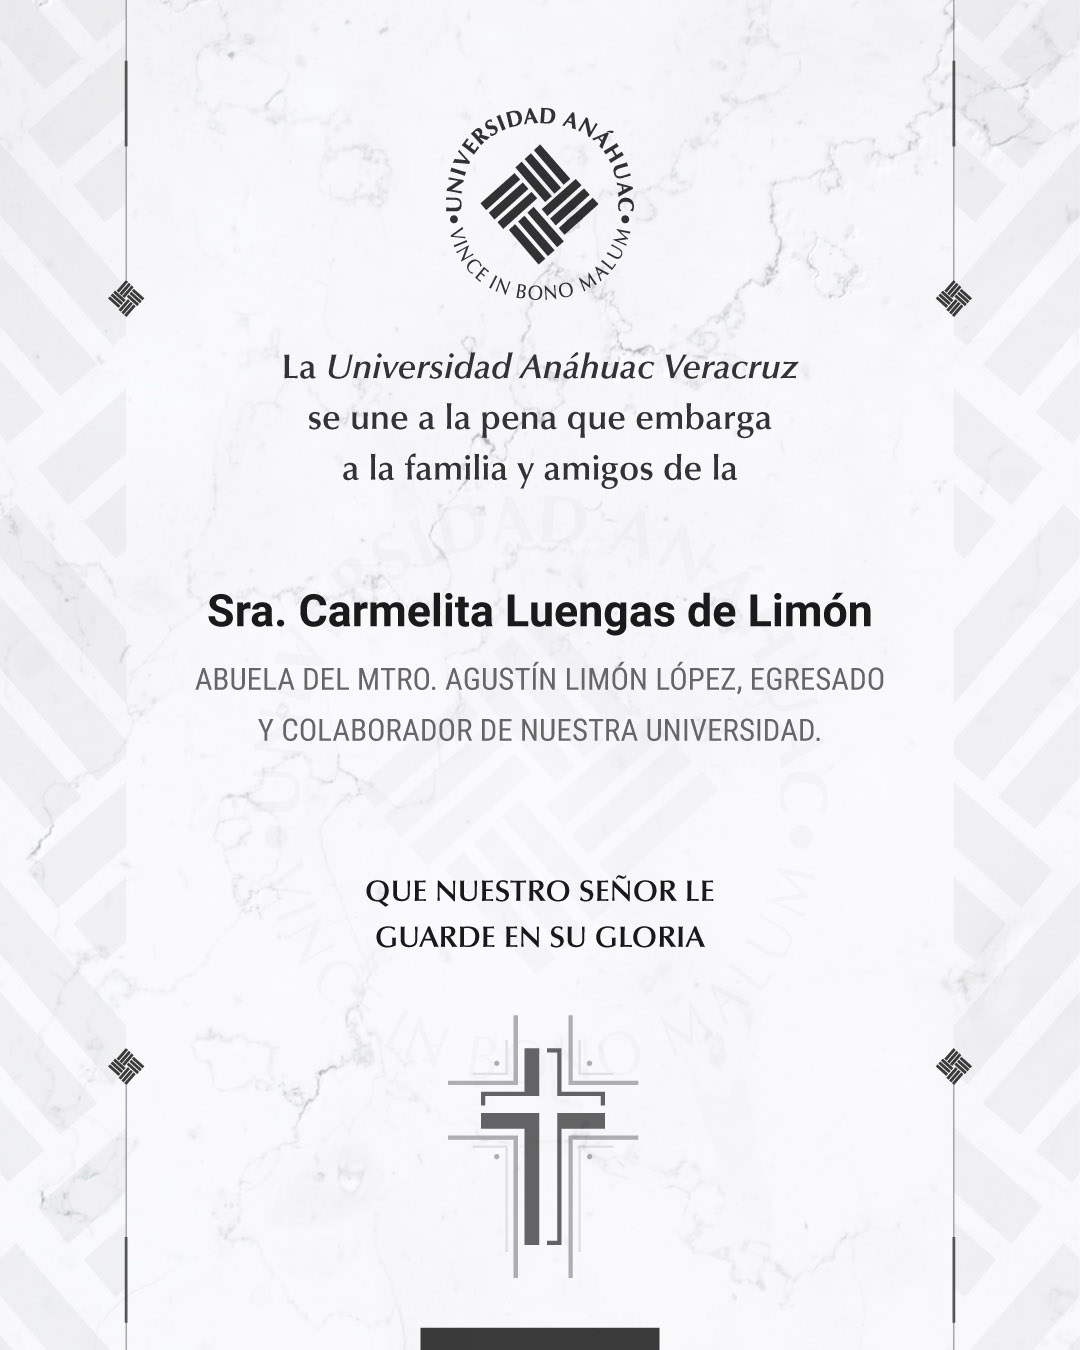 7 / 18 - Sra. Carmelita Luengas de Limón